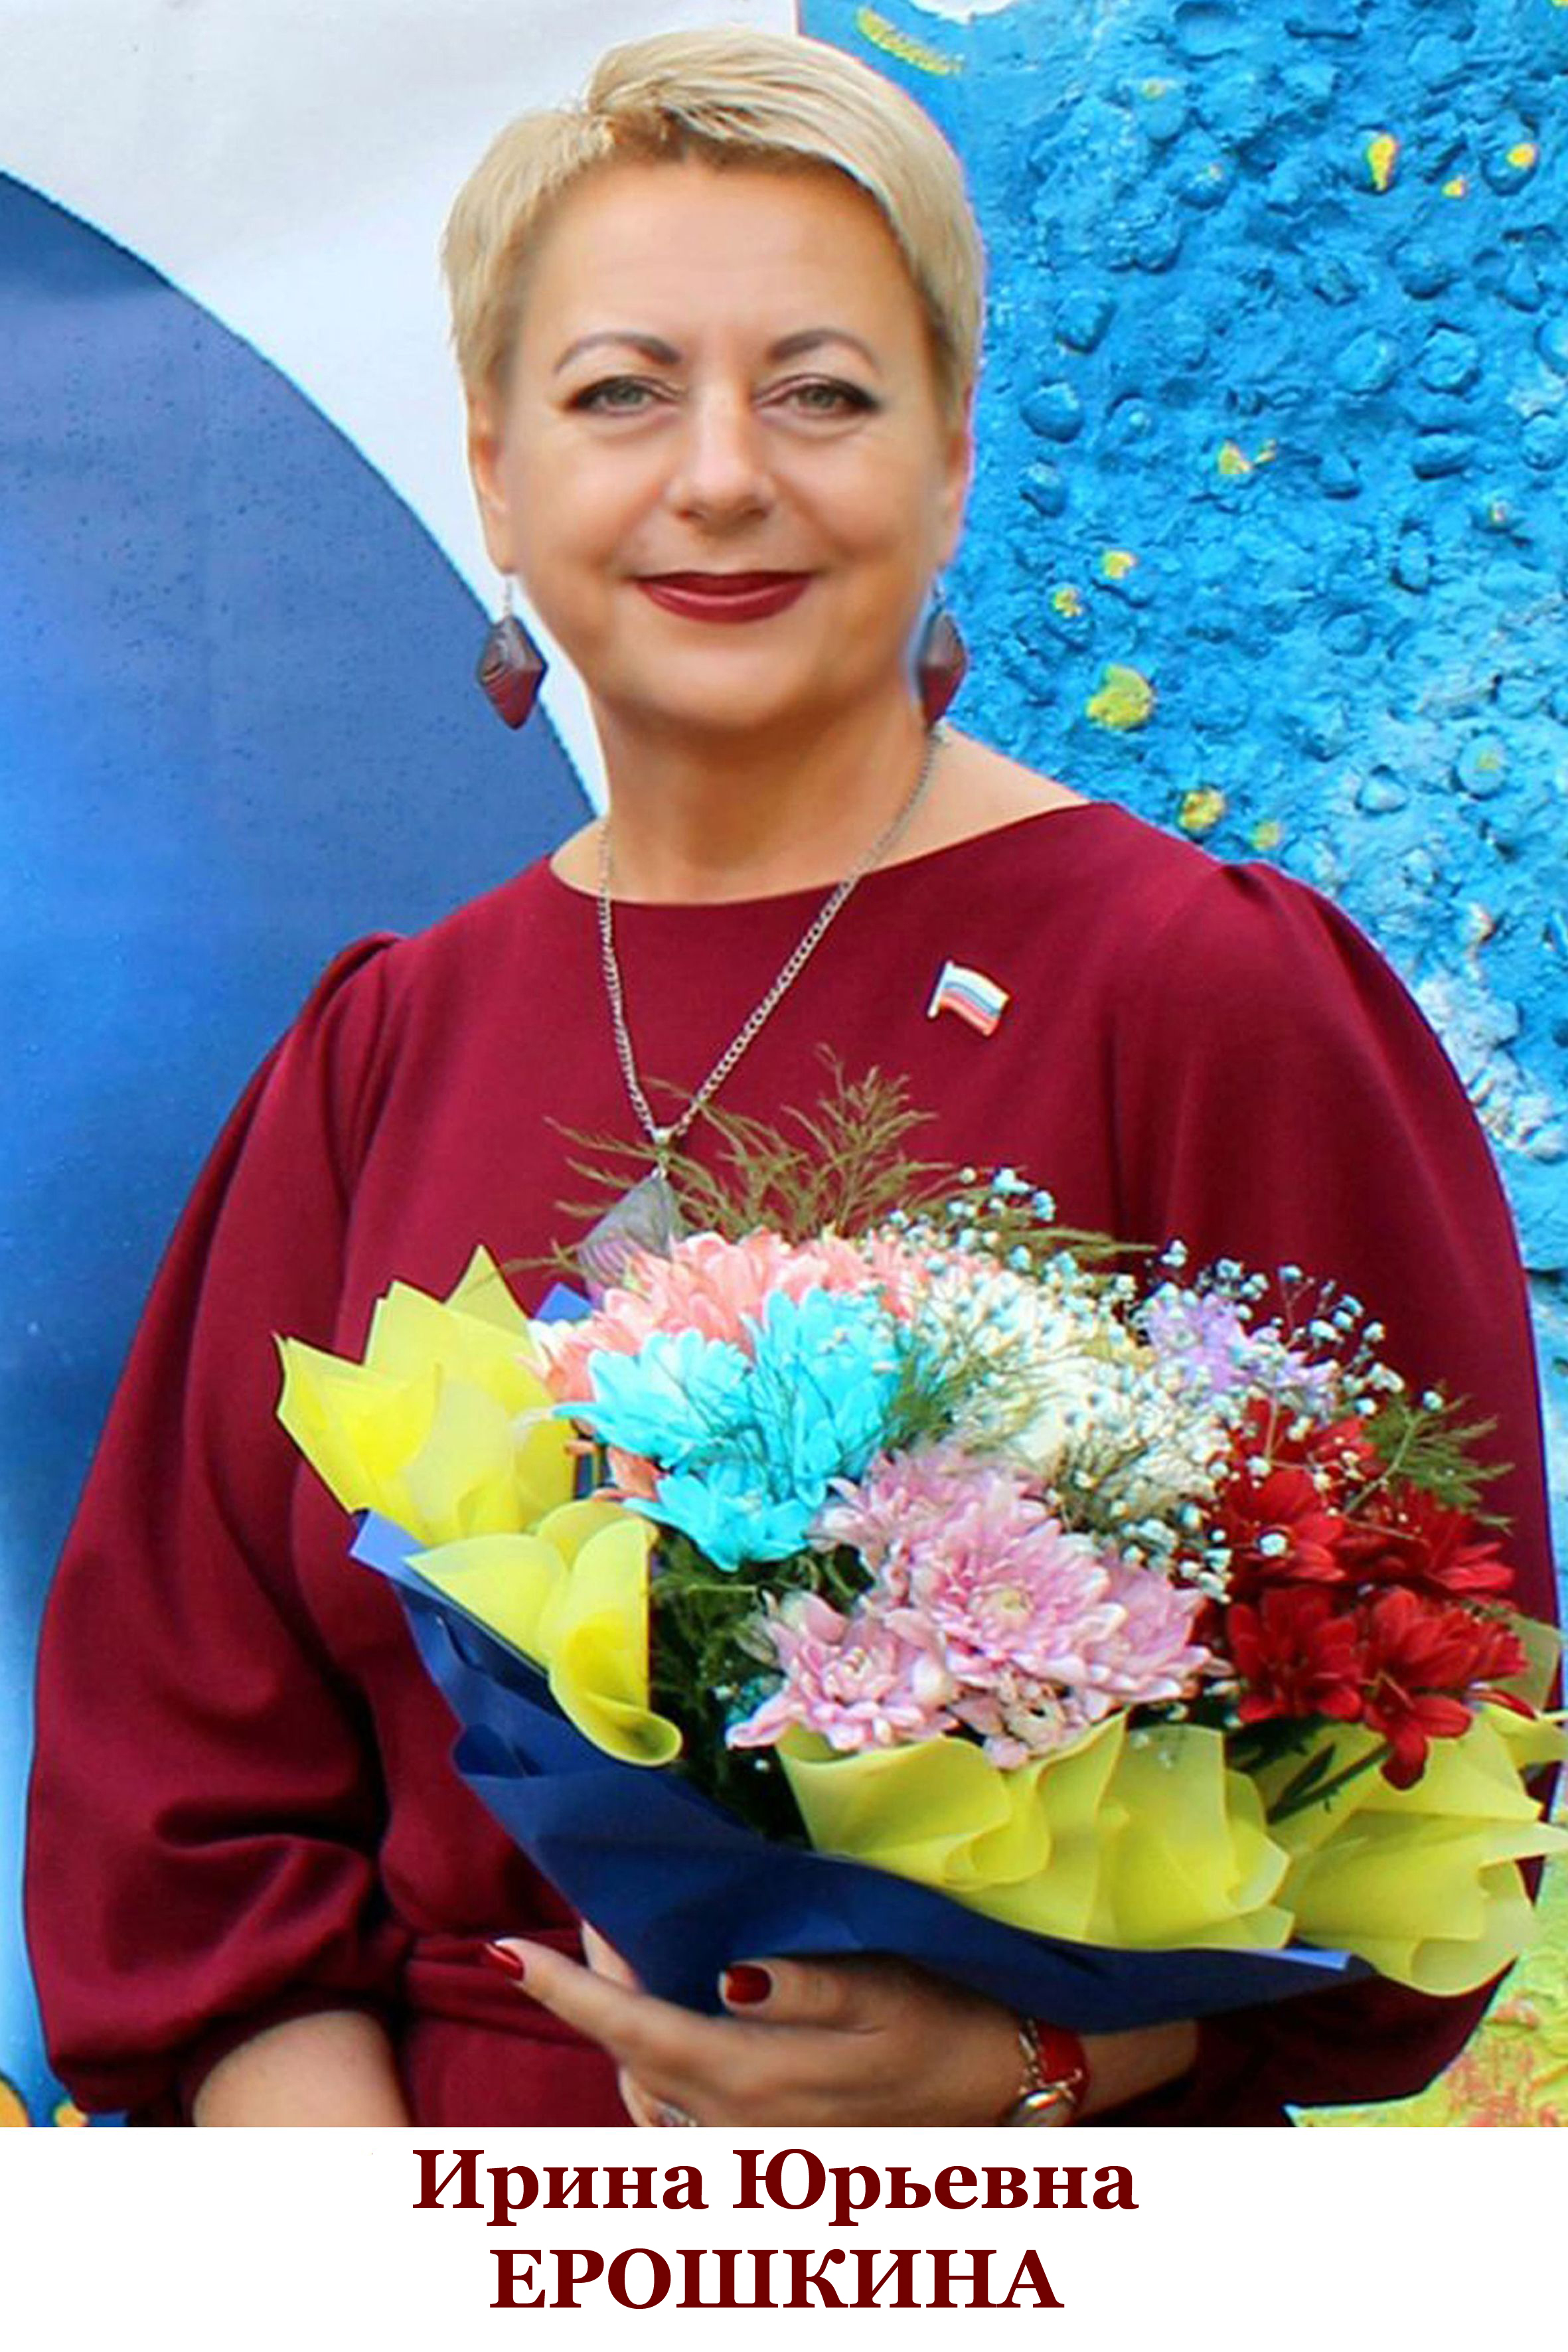 Ерошкина Ирина Юрьевна.